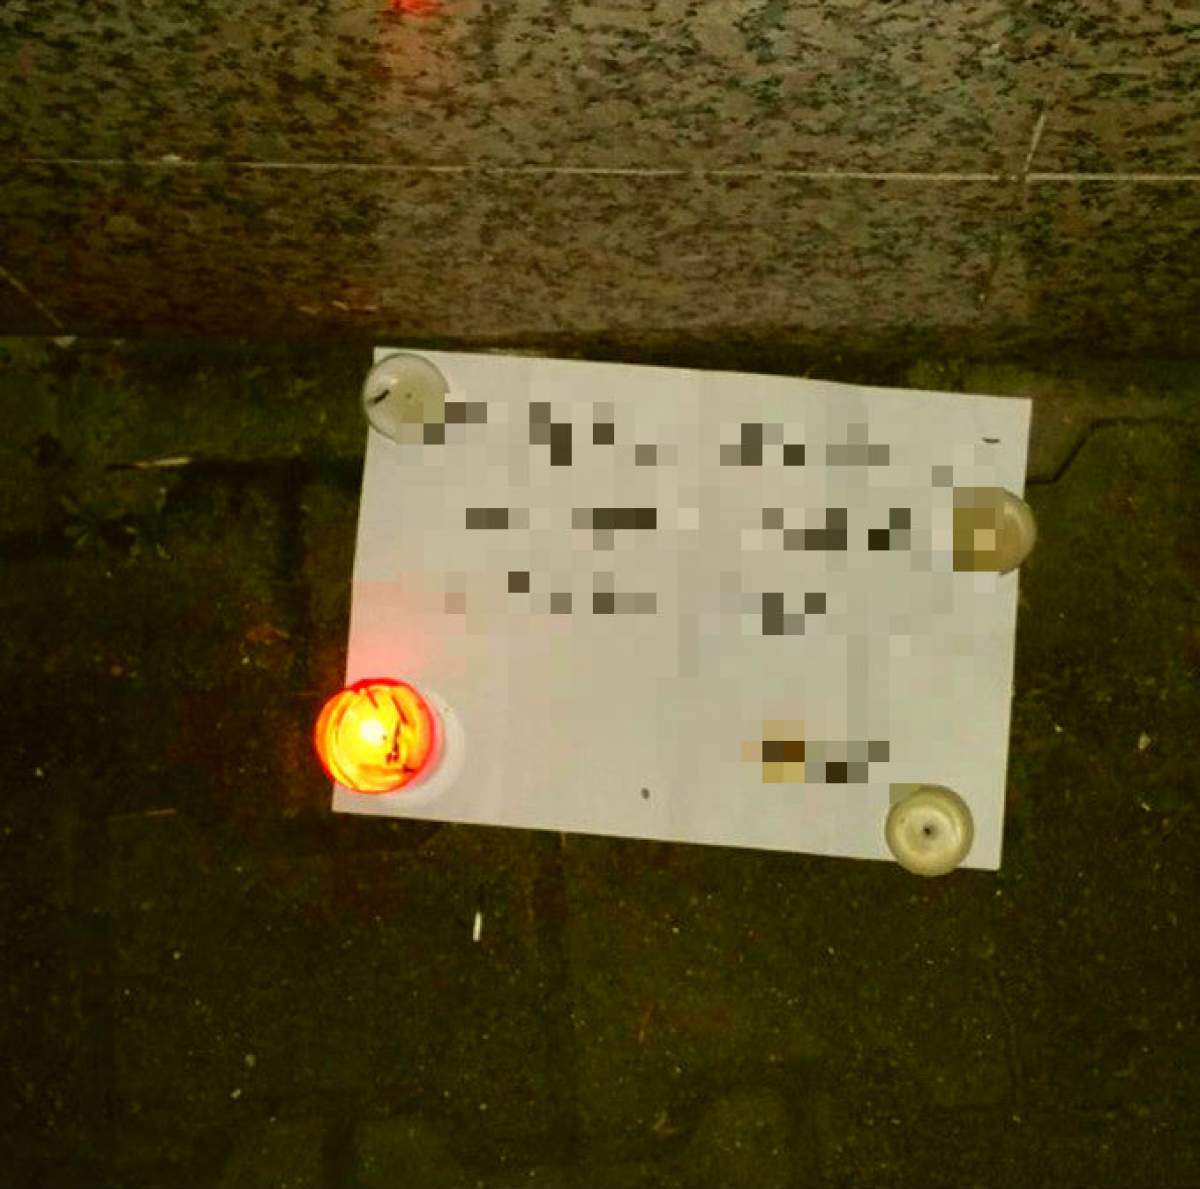 Biletul TERIFIANT care a fost găsit la Club Colectiv după incendiu